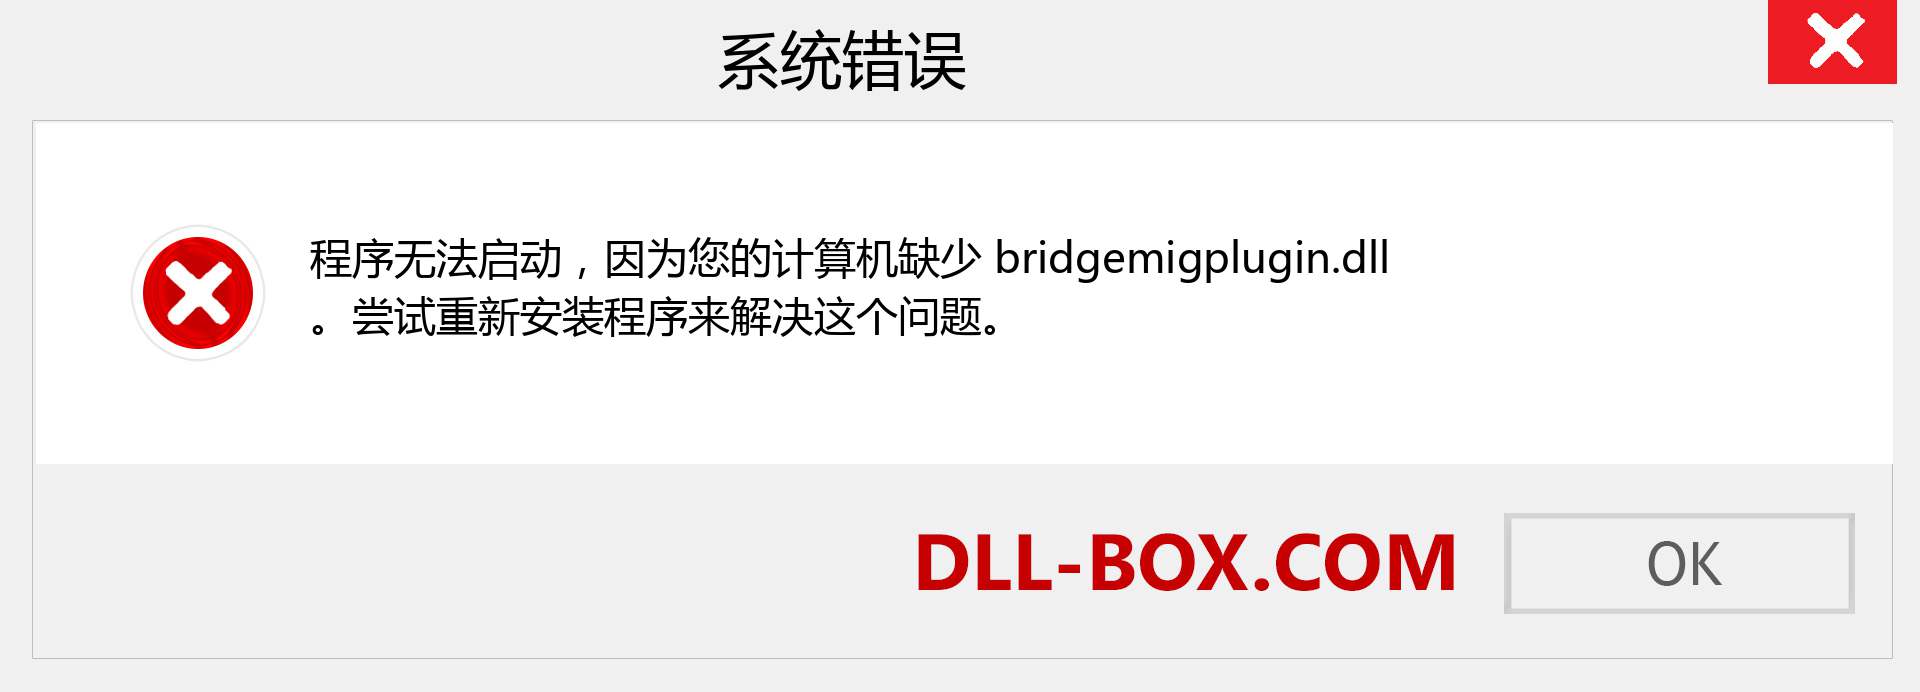 bridgemigplugin.dll 文件丢失？。 适用于 Windows 7、8、10 的下载 - 修复 Windows、照片、图像上的 bridgemigplugin dll 丢失错误